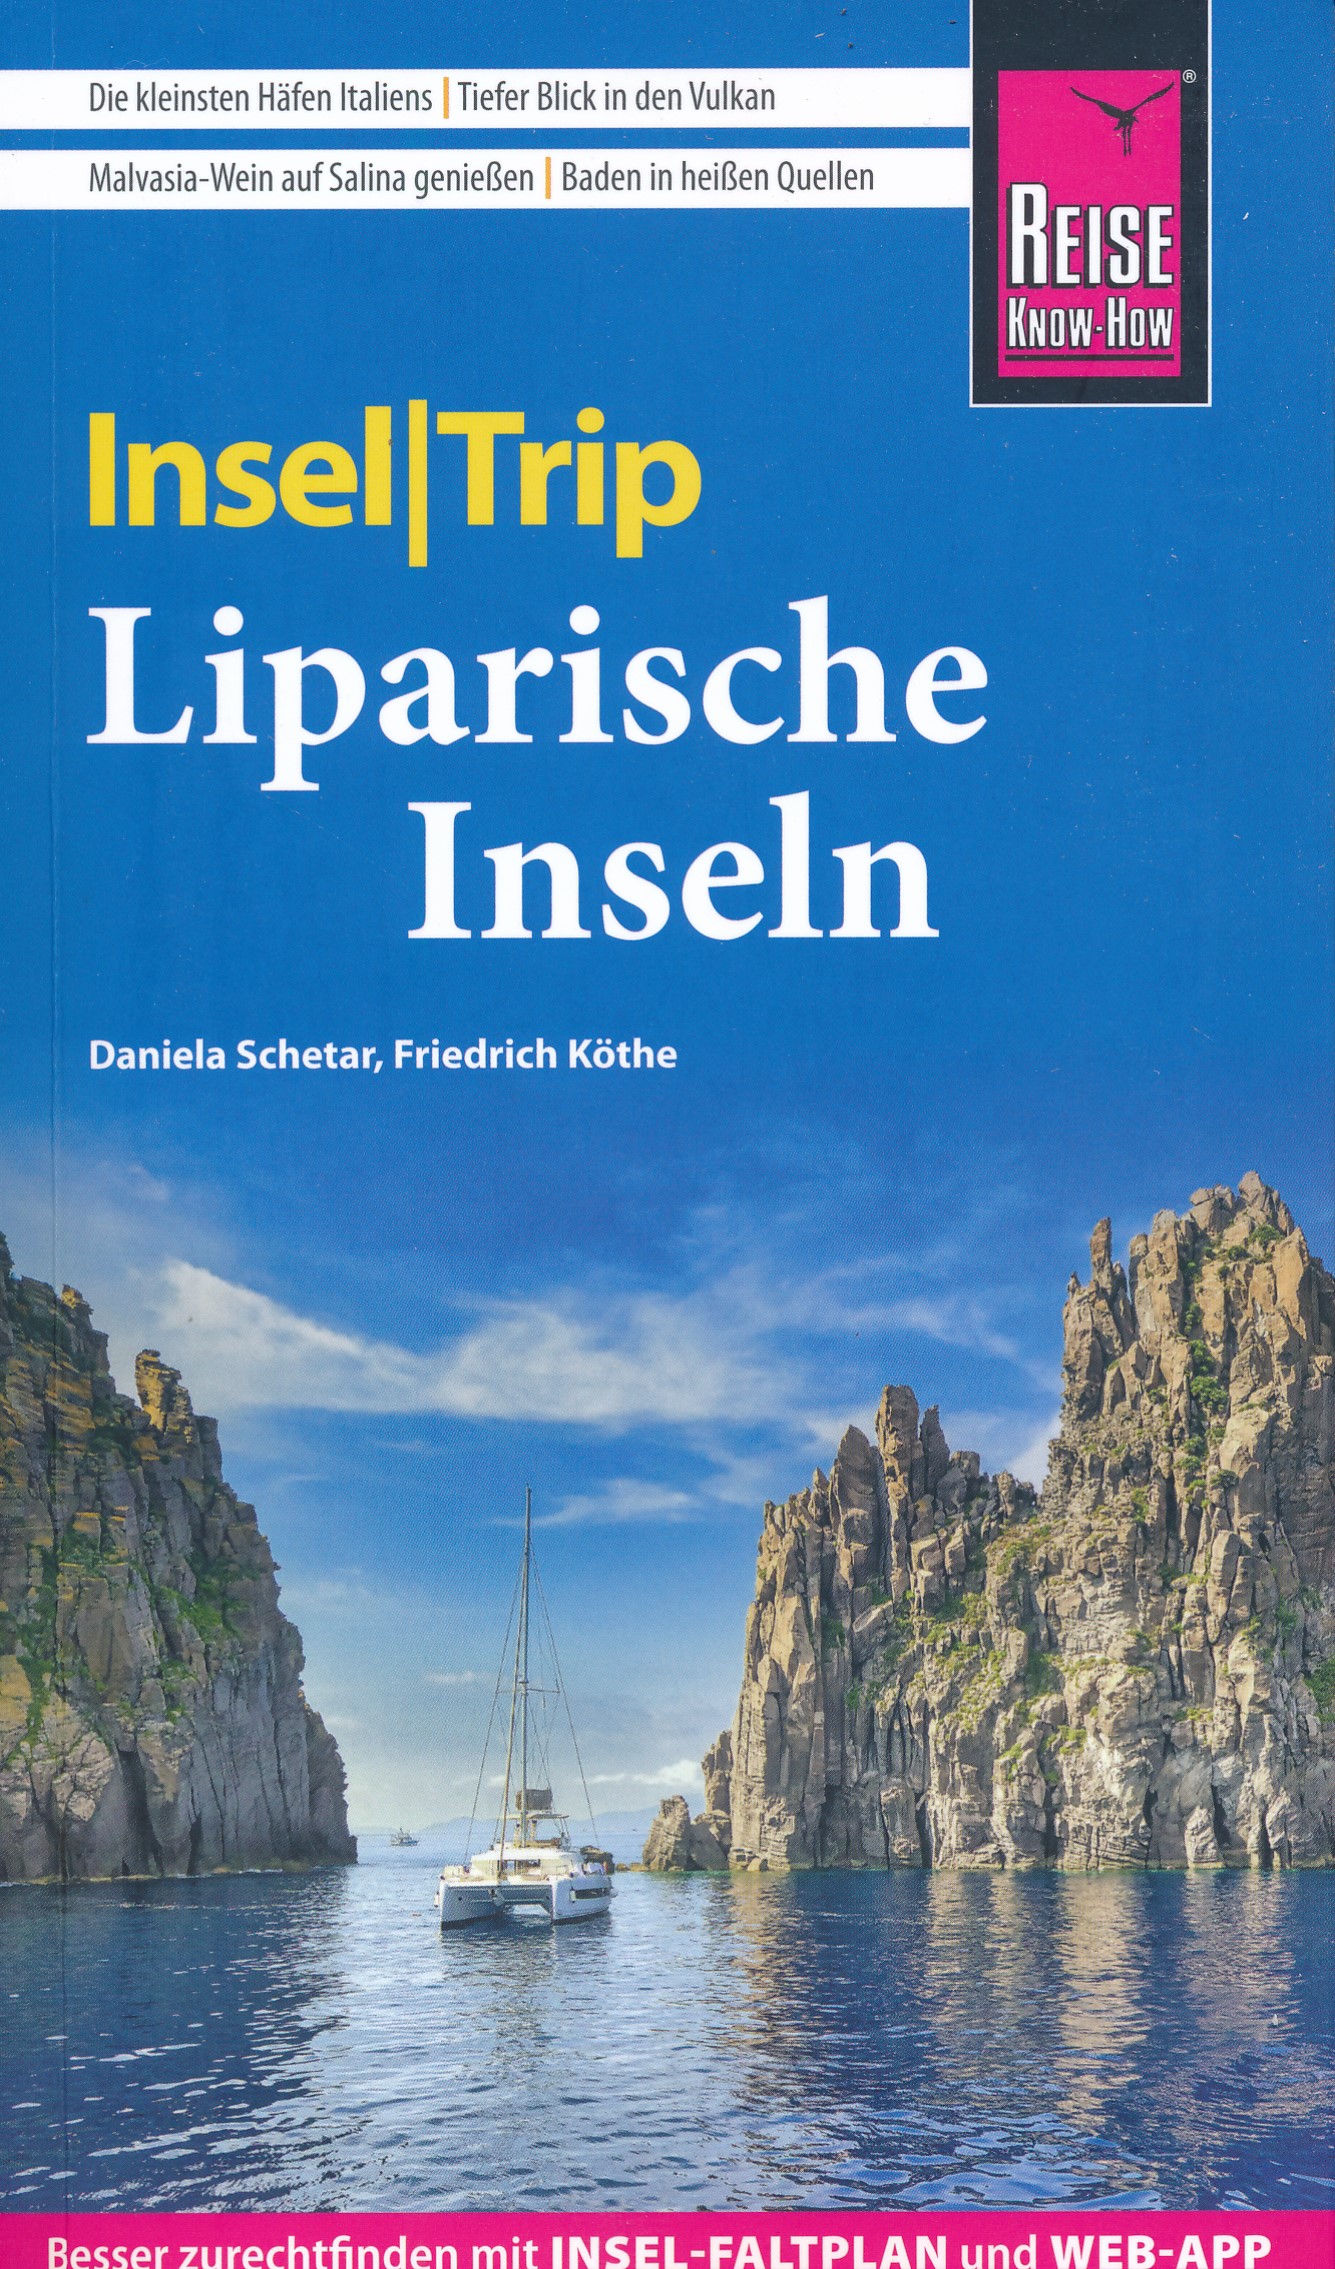 Online bestellen: Reisgids Insel|Trip Liparische Inseln | Reise Know-How Verlag